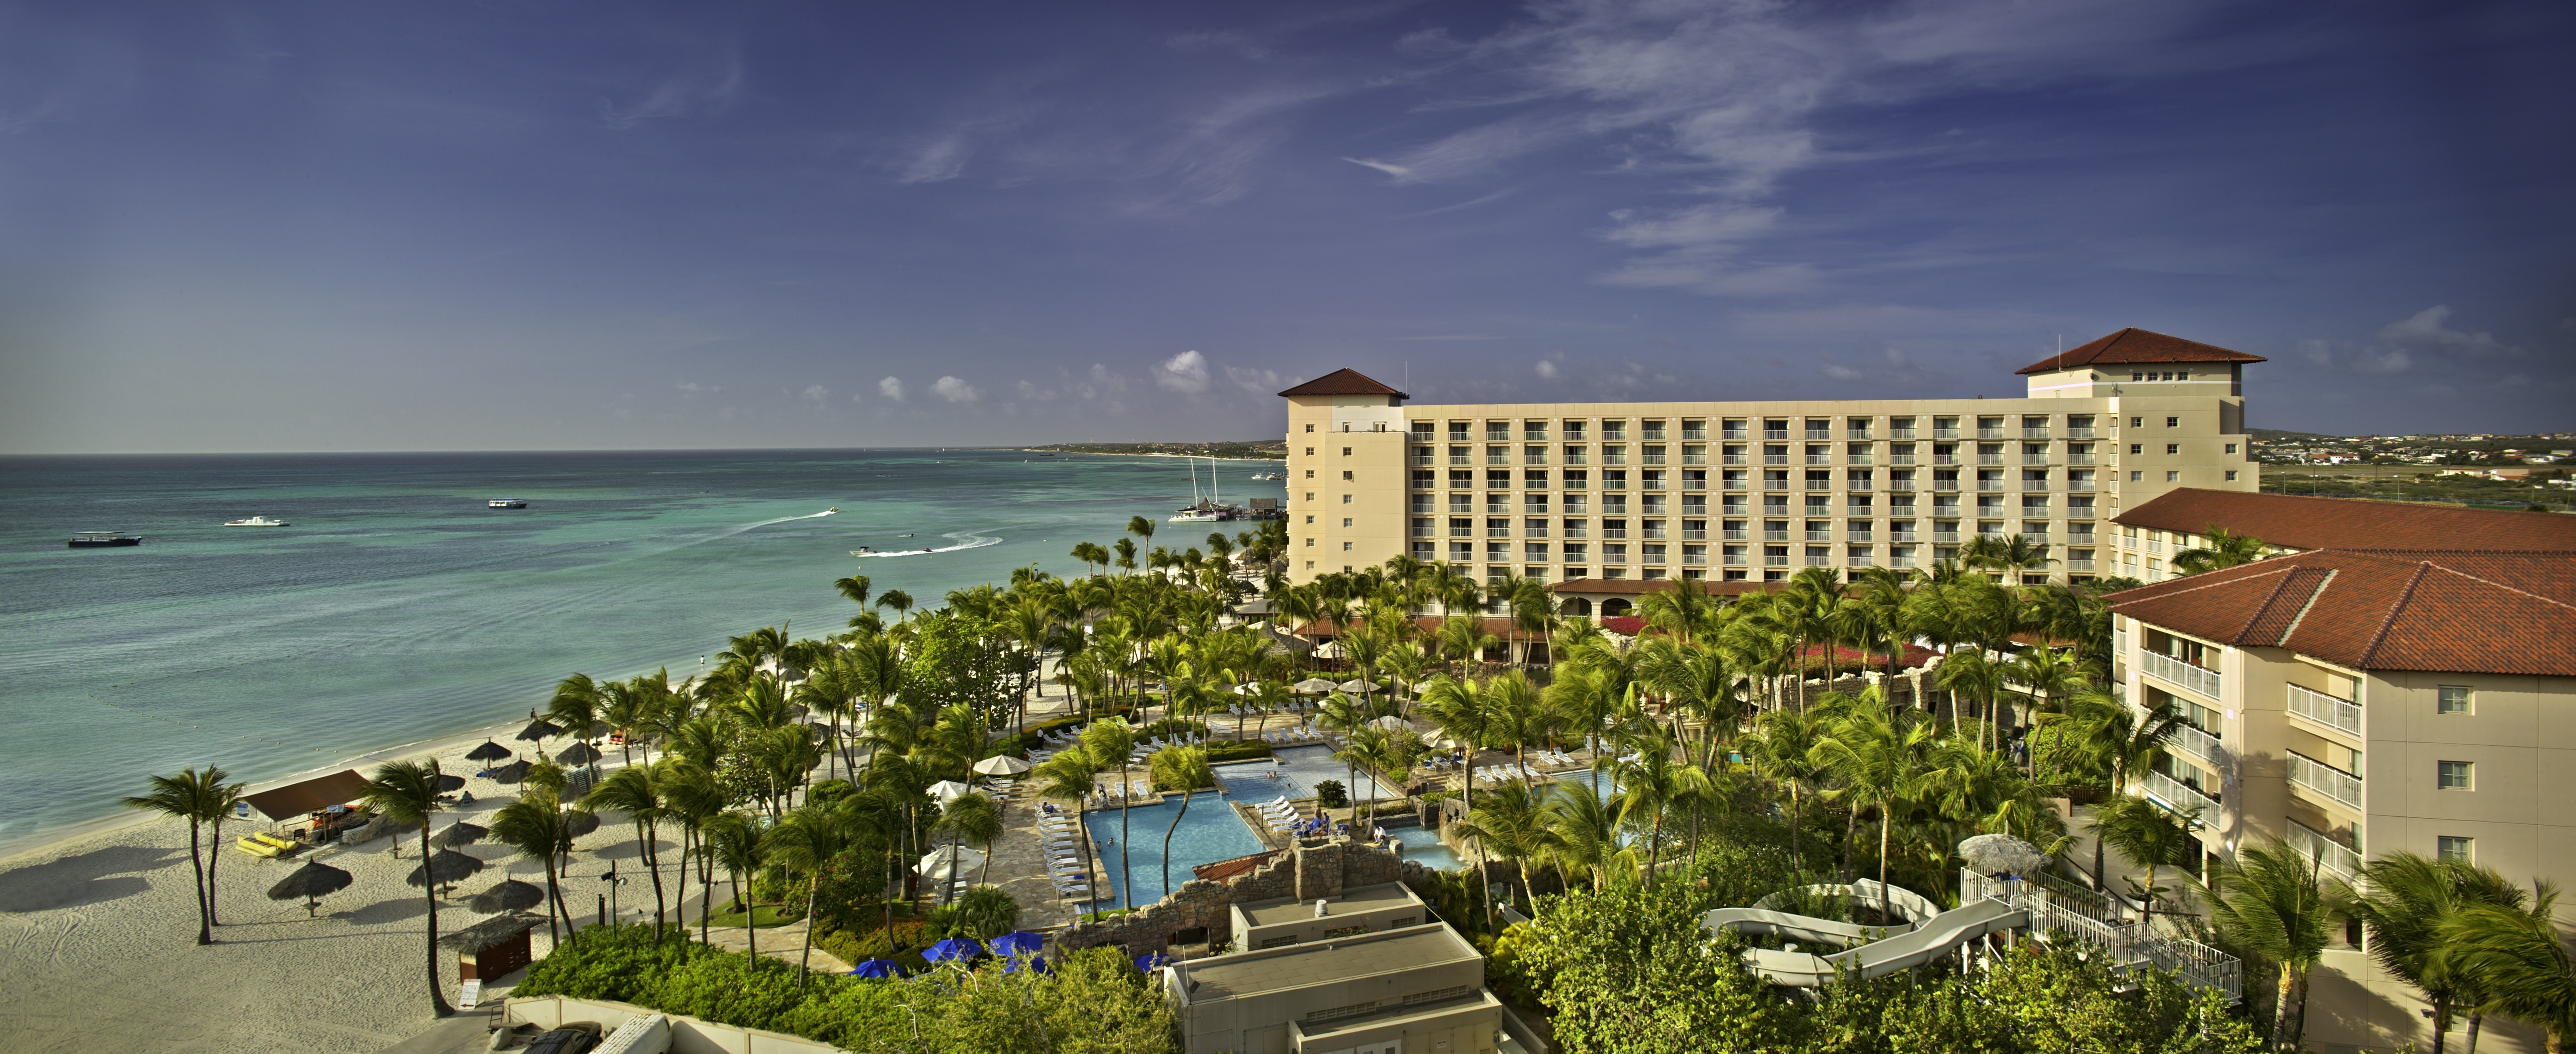 Aruba HOTEL|アルバ ホテル